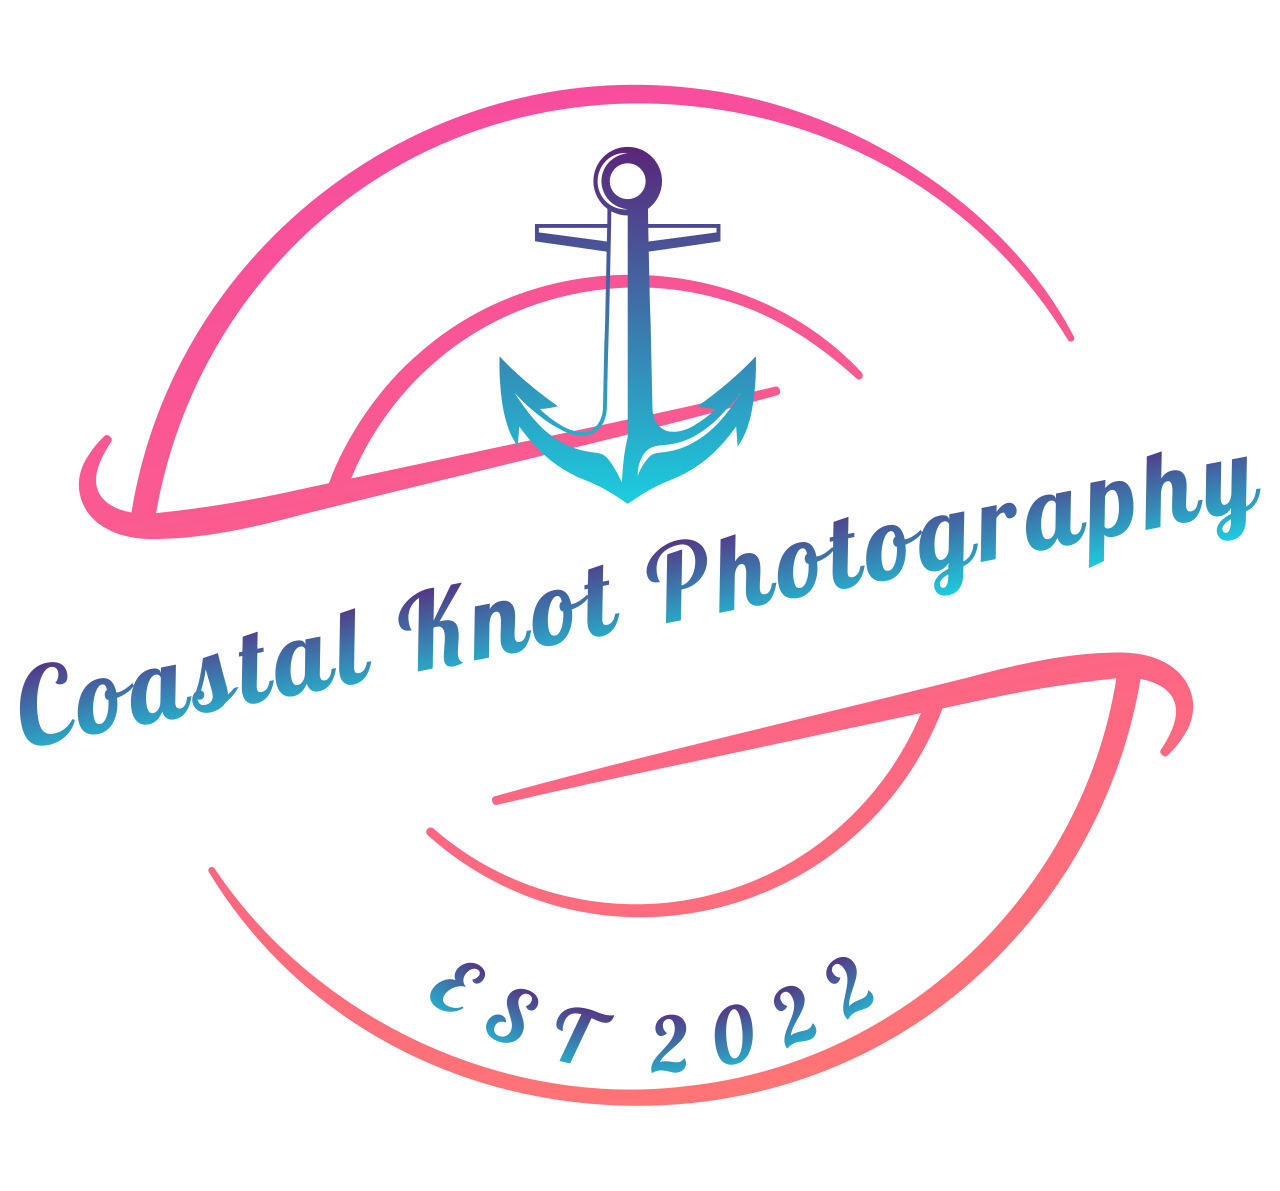 Coastal Knot Photography's logo